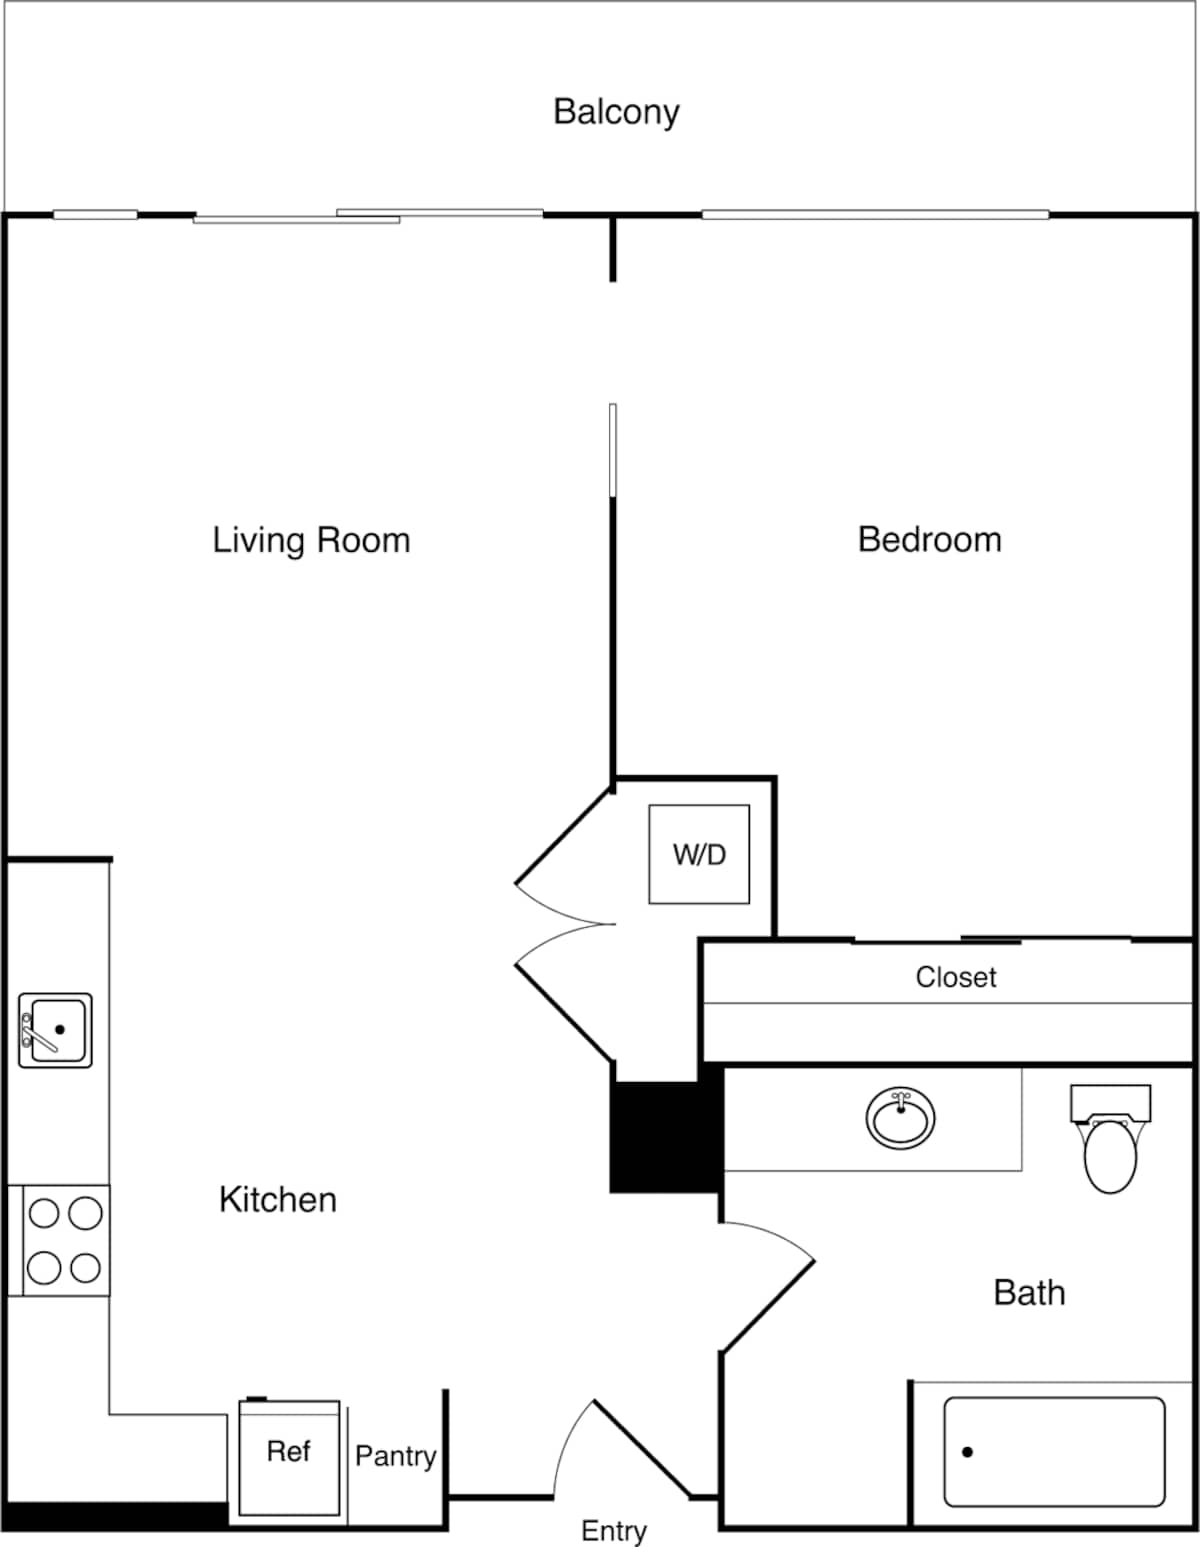 Floorplan diagram for 1.12, showing 1 bedroom